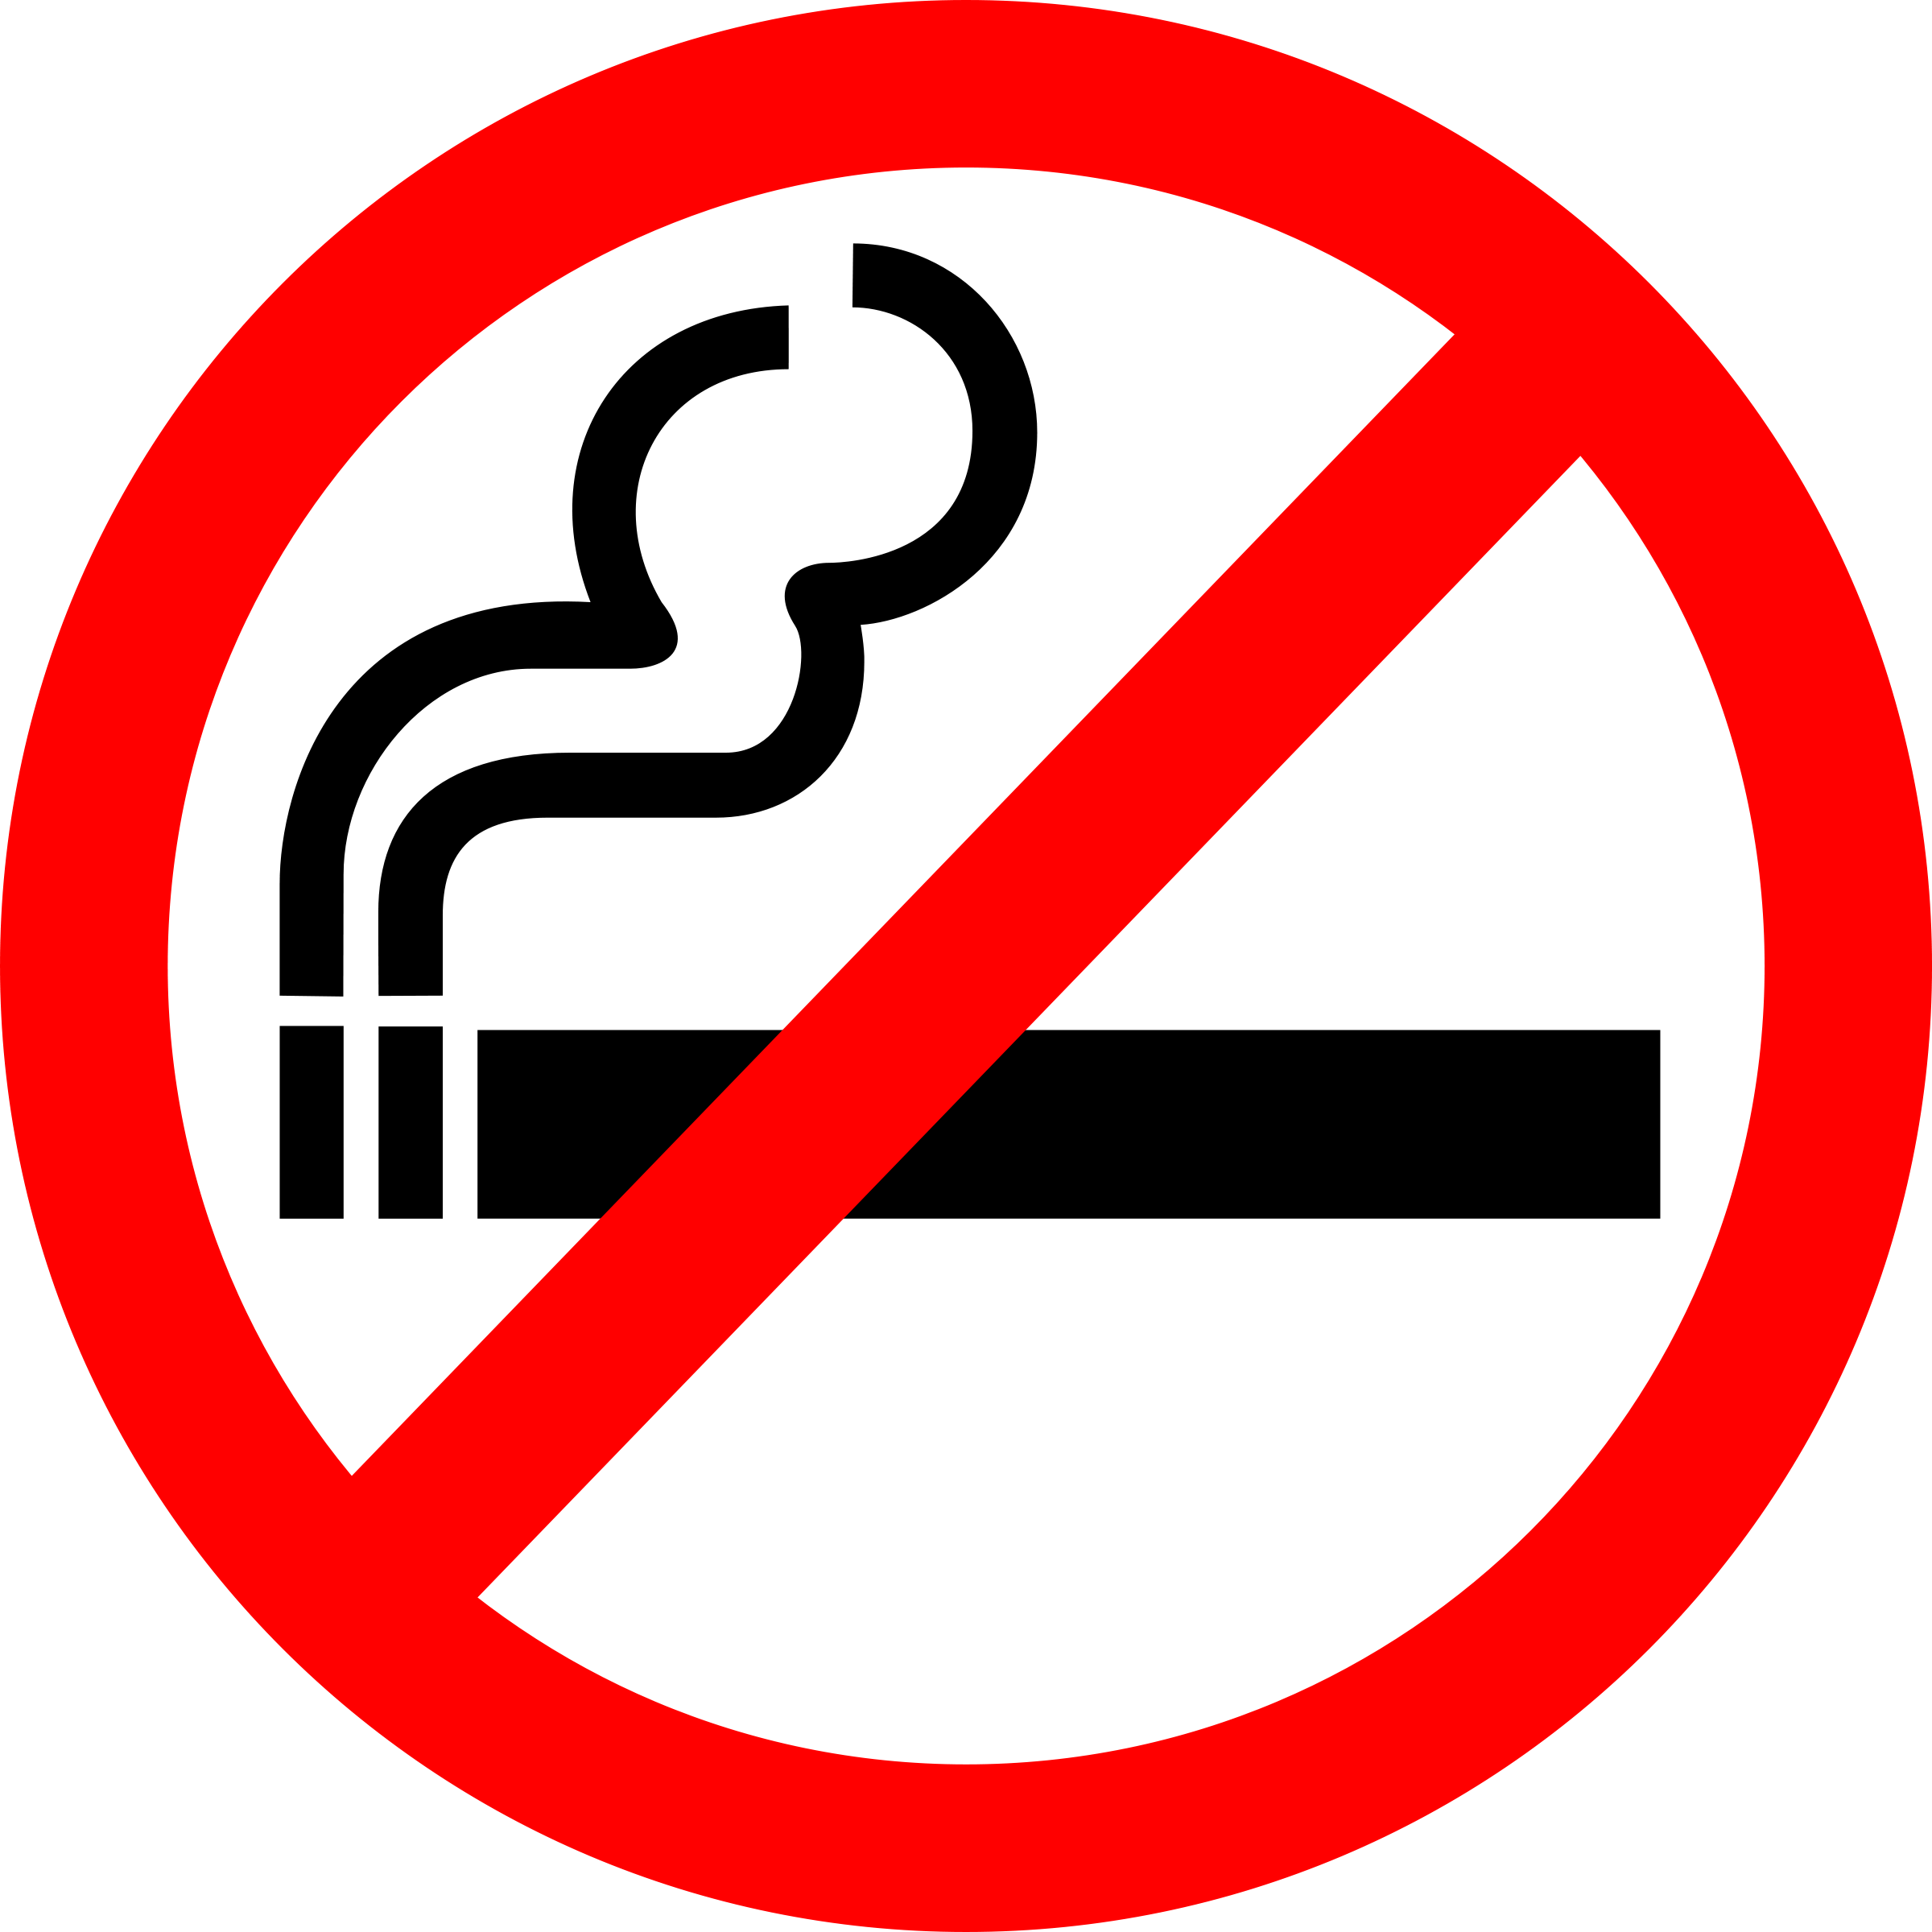 Free No Smoking Sign, Download Free No Smoking Sign png images, Free